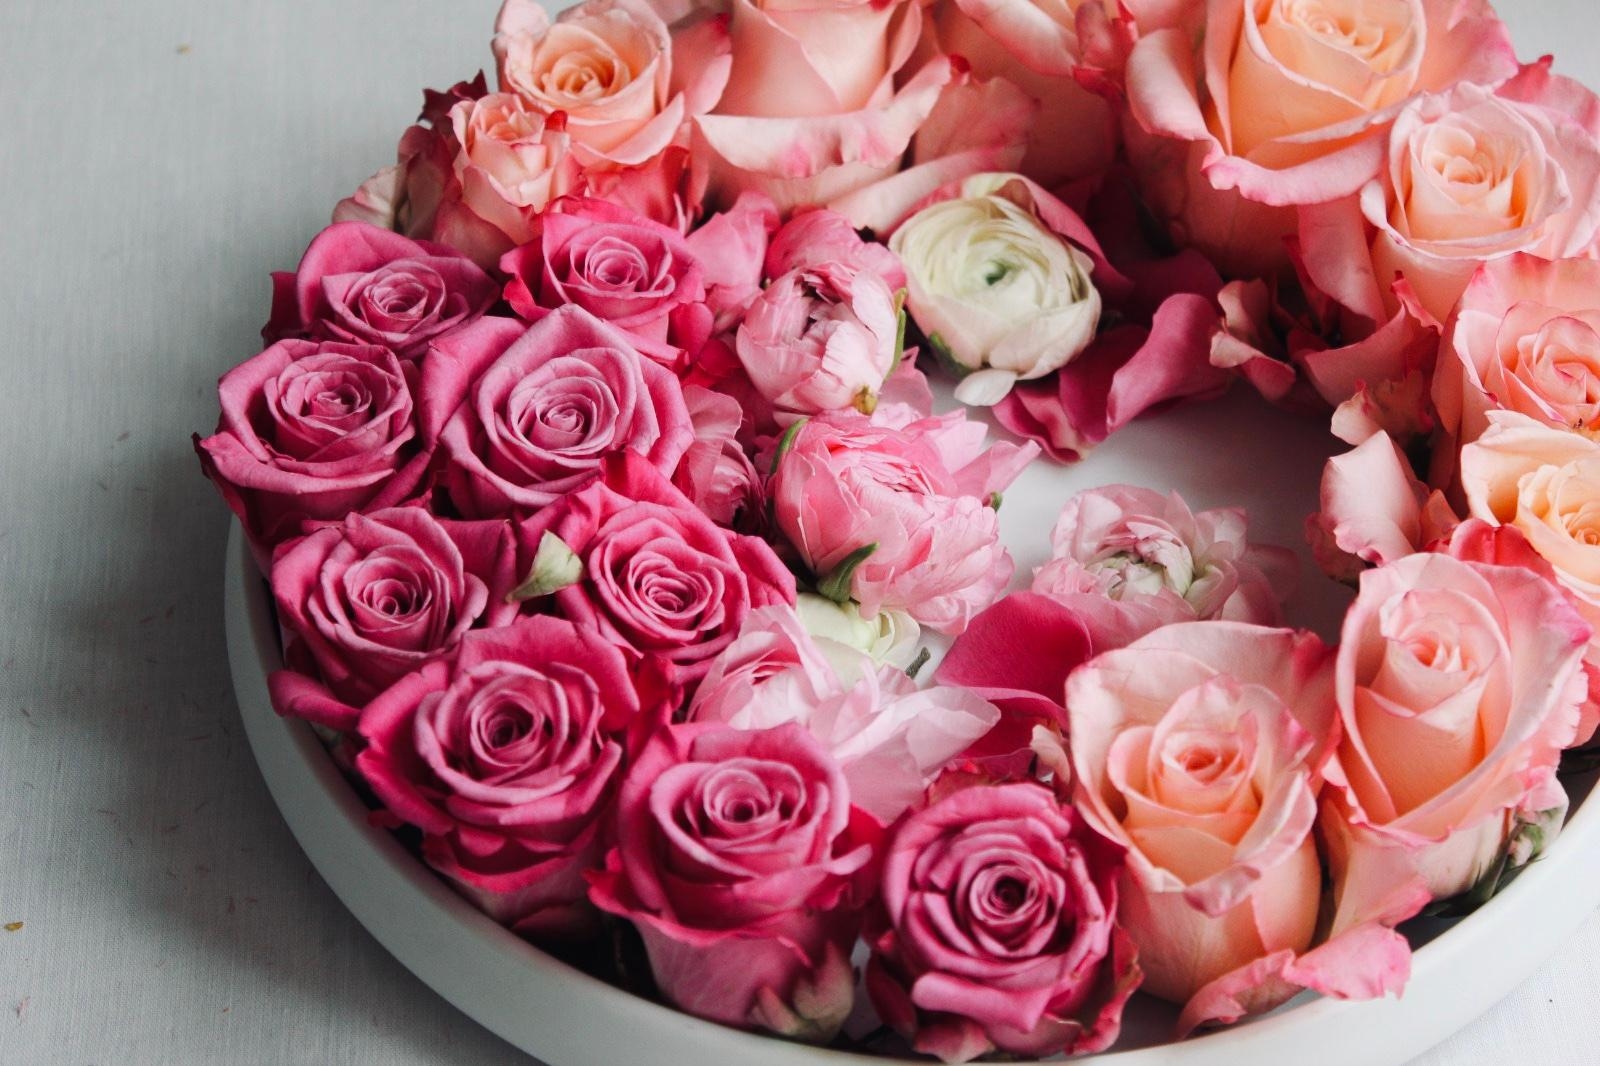 Flowers for you. ❤️ #freshflowerfriday #flowers #couchliebt #couchstyle #blumenliebe #dekoidee 